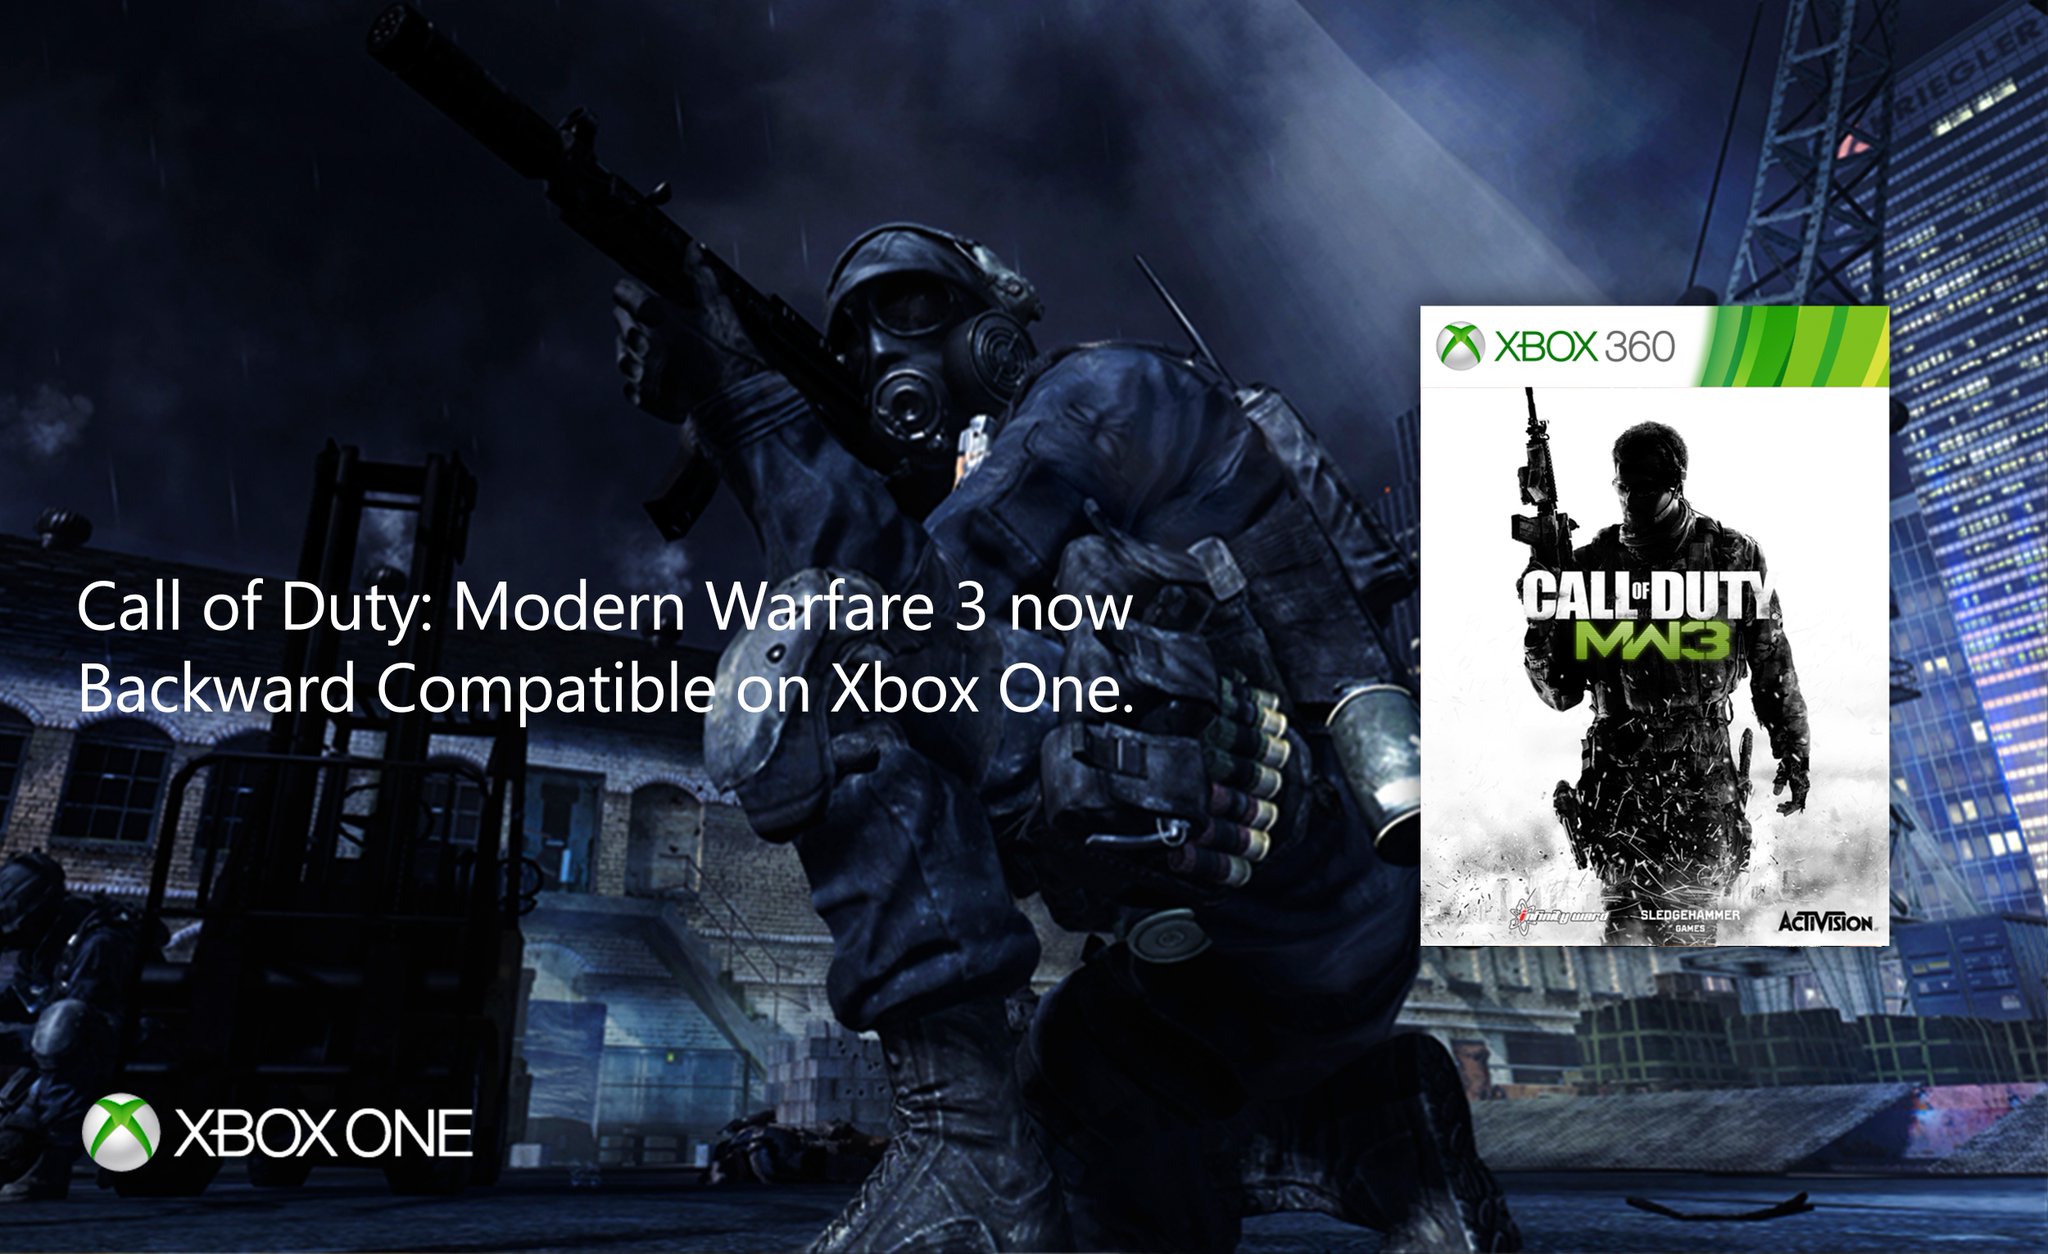 winkelwagen Prestatie beha CharlieIntel on Twitter: "BREAKING: Call of Duty: Modern Warfare 3 is now backwards  compatible on Xbox One https://t.co/LRPjFKMyRP https://t.co/aMkjK5Zb4S" /  Twitter